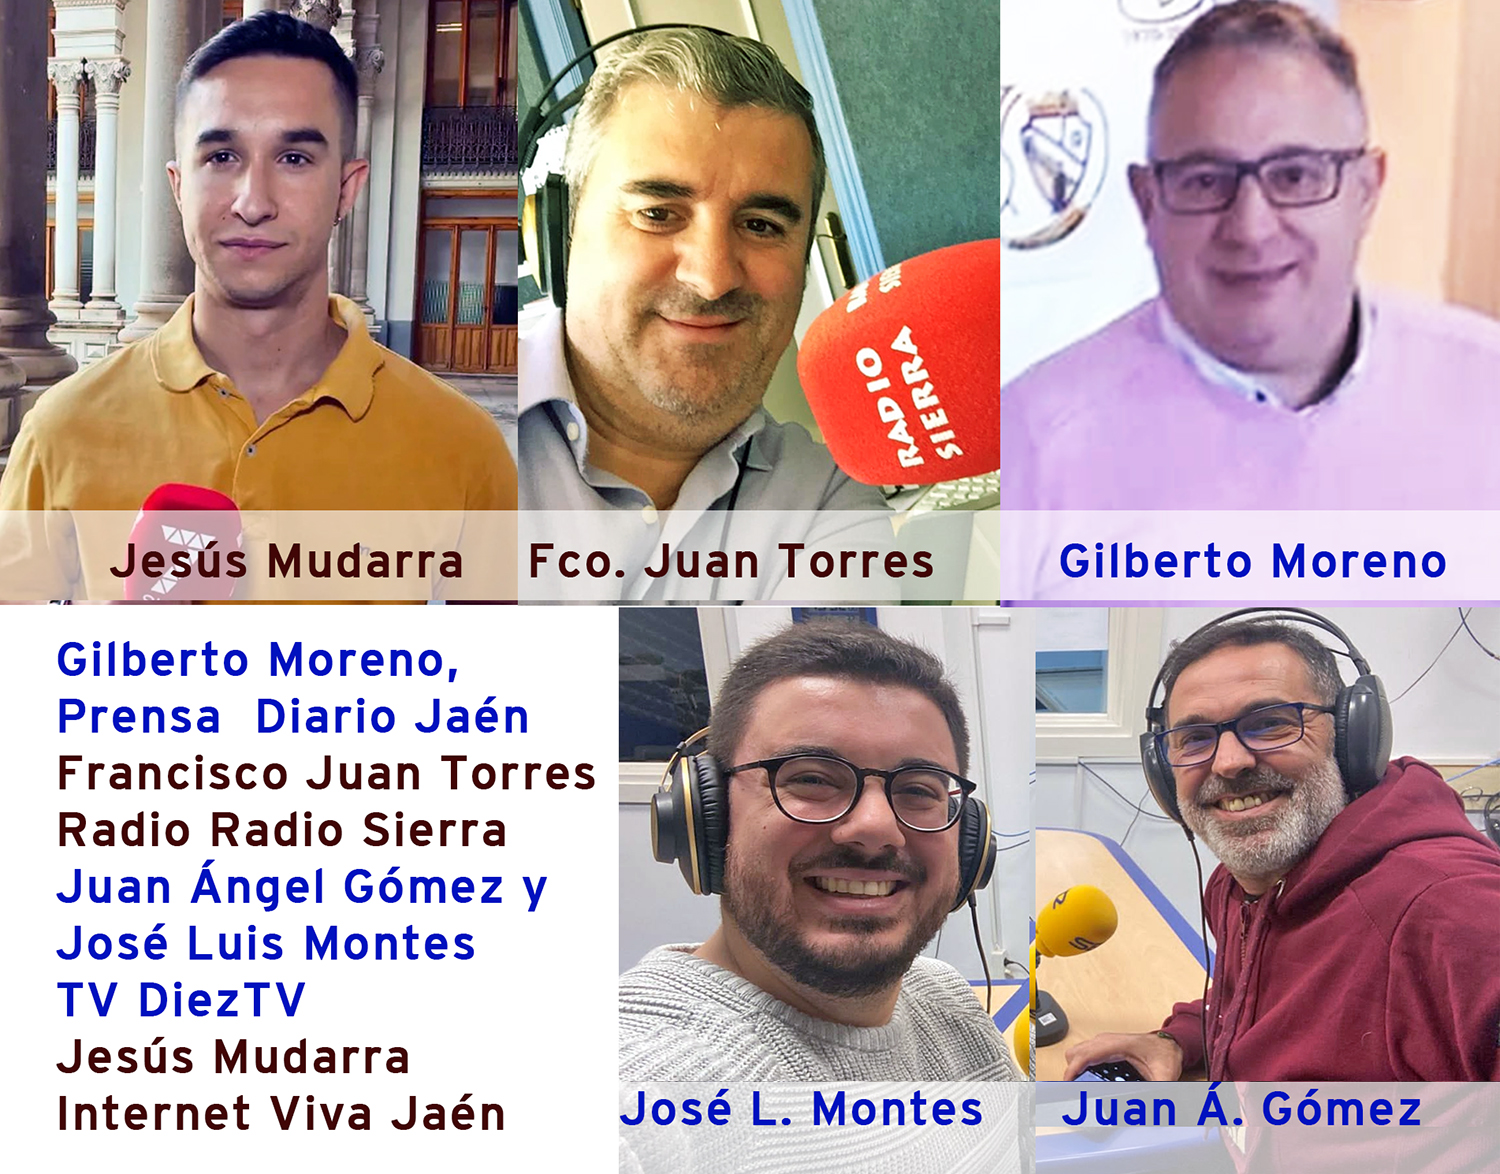 Gilberto Moreno, Francisco Juan Torres, Juan Ángel Gómez y José Luis Montes, y Jesús Mudarra Premios de Periodismo/23 de Diputación